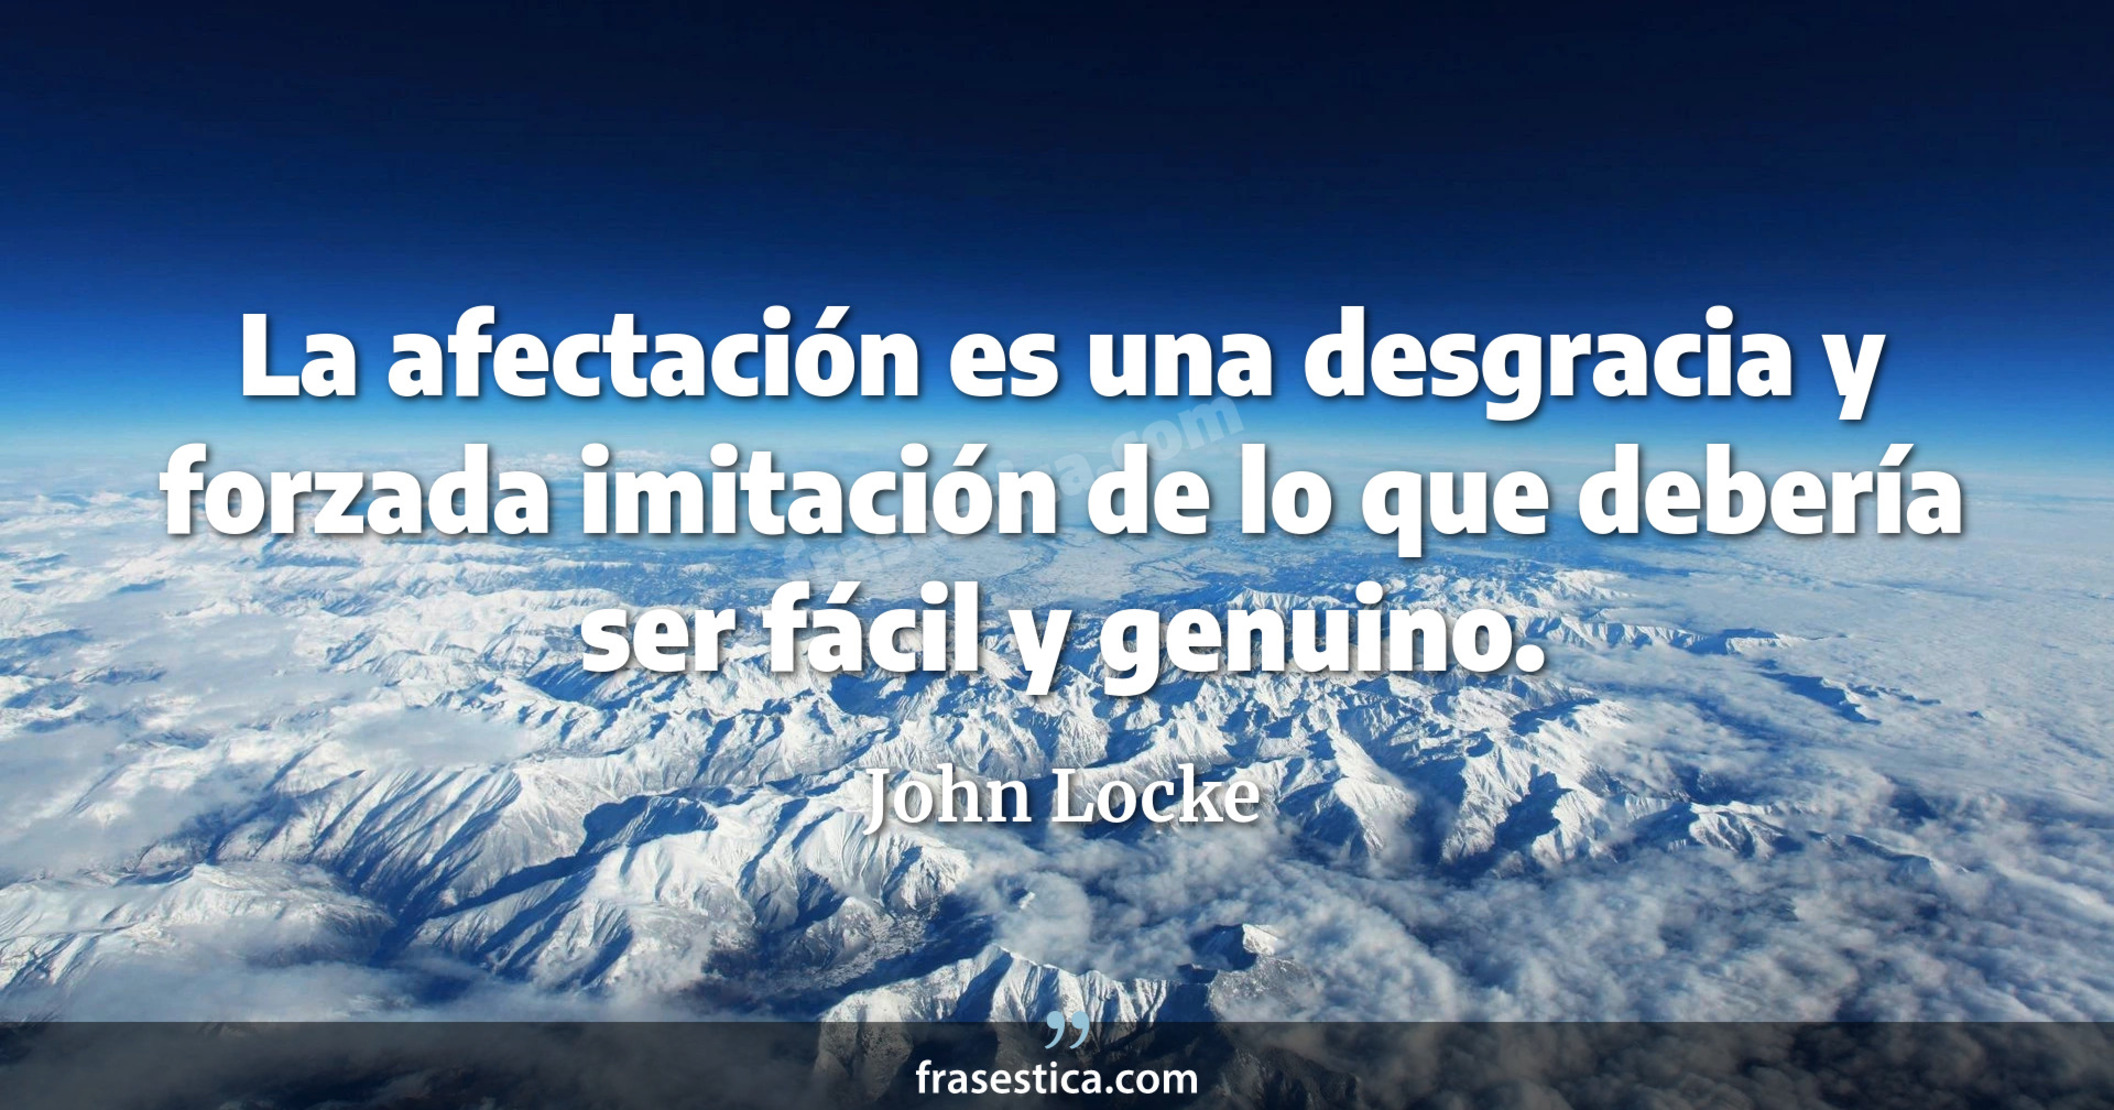 La afectación es una desgracia y forzada imitación de lo que debería ser fácil y genuino. - John Locke